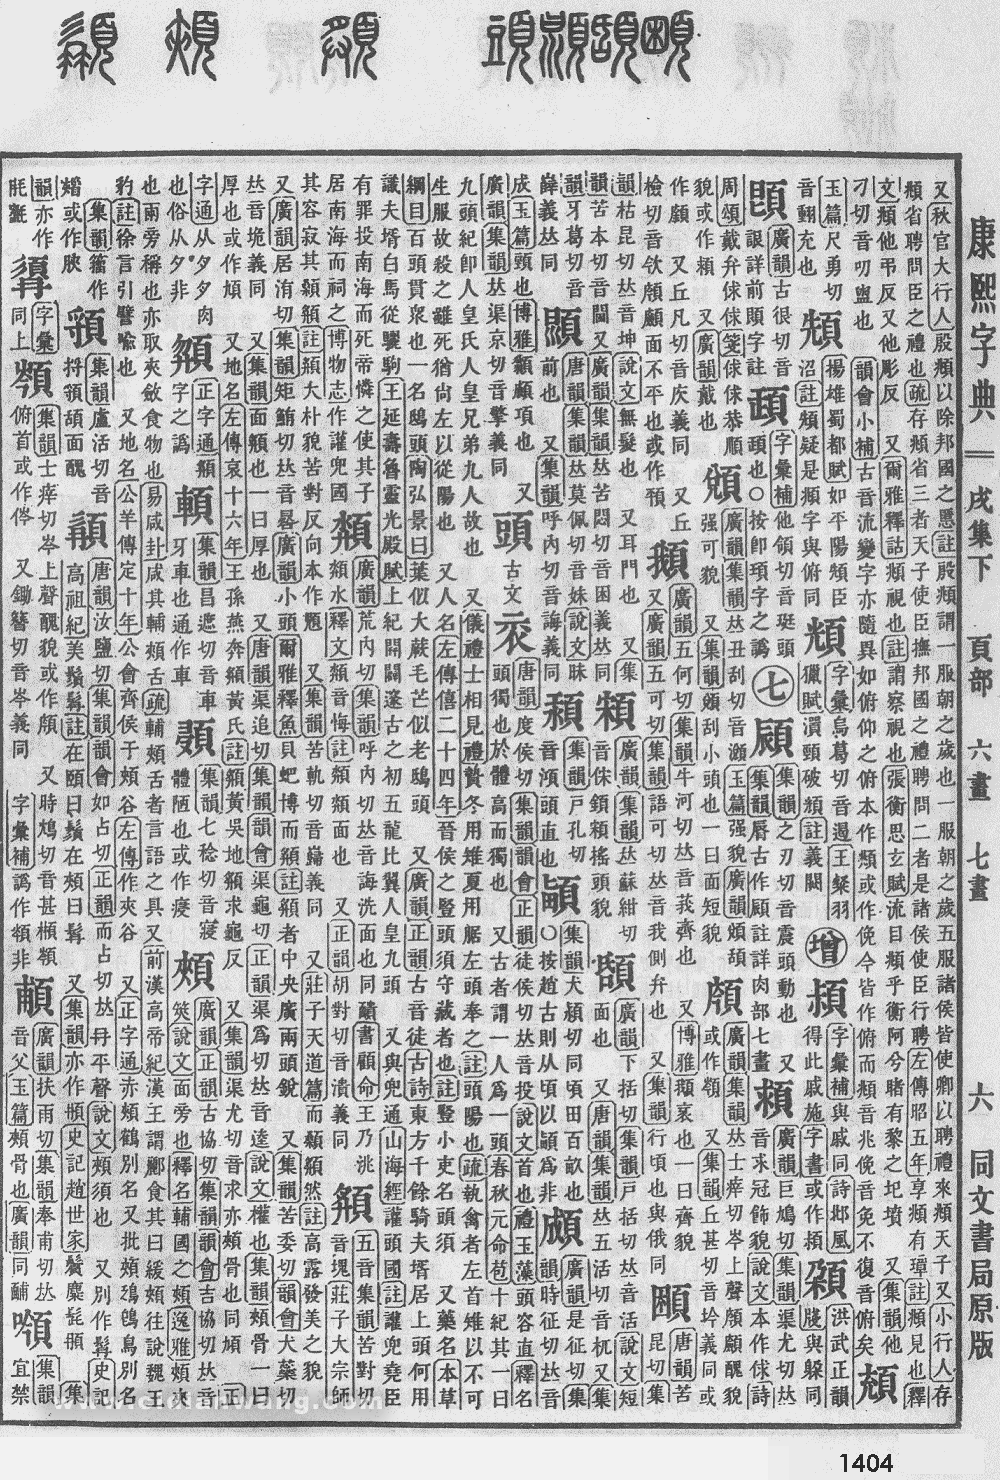 康熙字典掃描版第1404頁